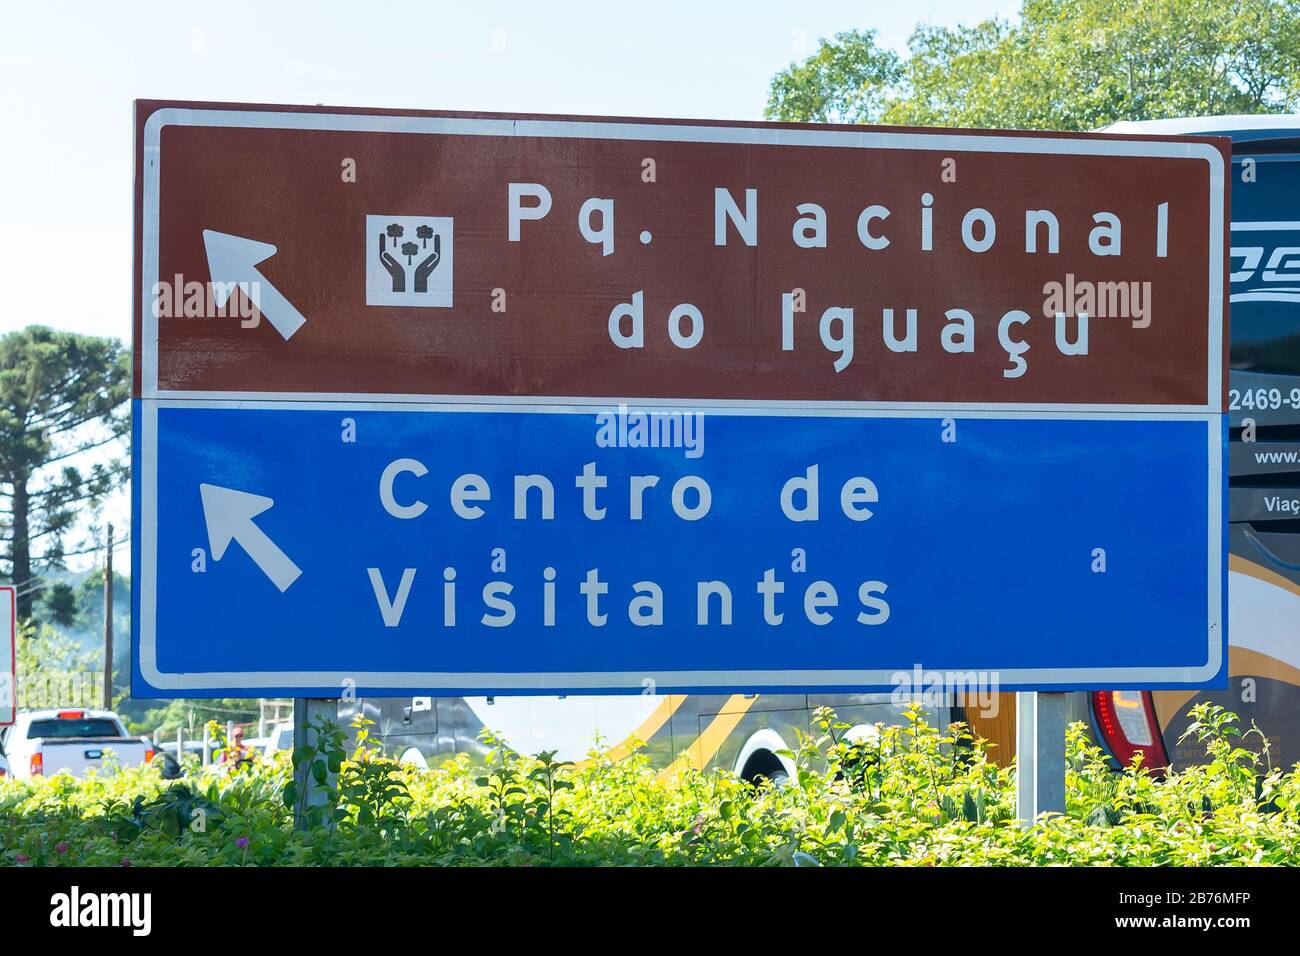 Panneau de signalisation indiquant les directions vers le parc national d'Iguaçu et le centre d'accueil au Brésil. Destination touristique populaire en Amérique du Sud. Banque D'Images